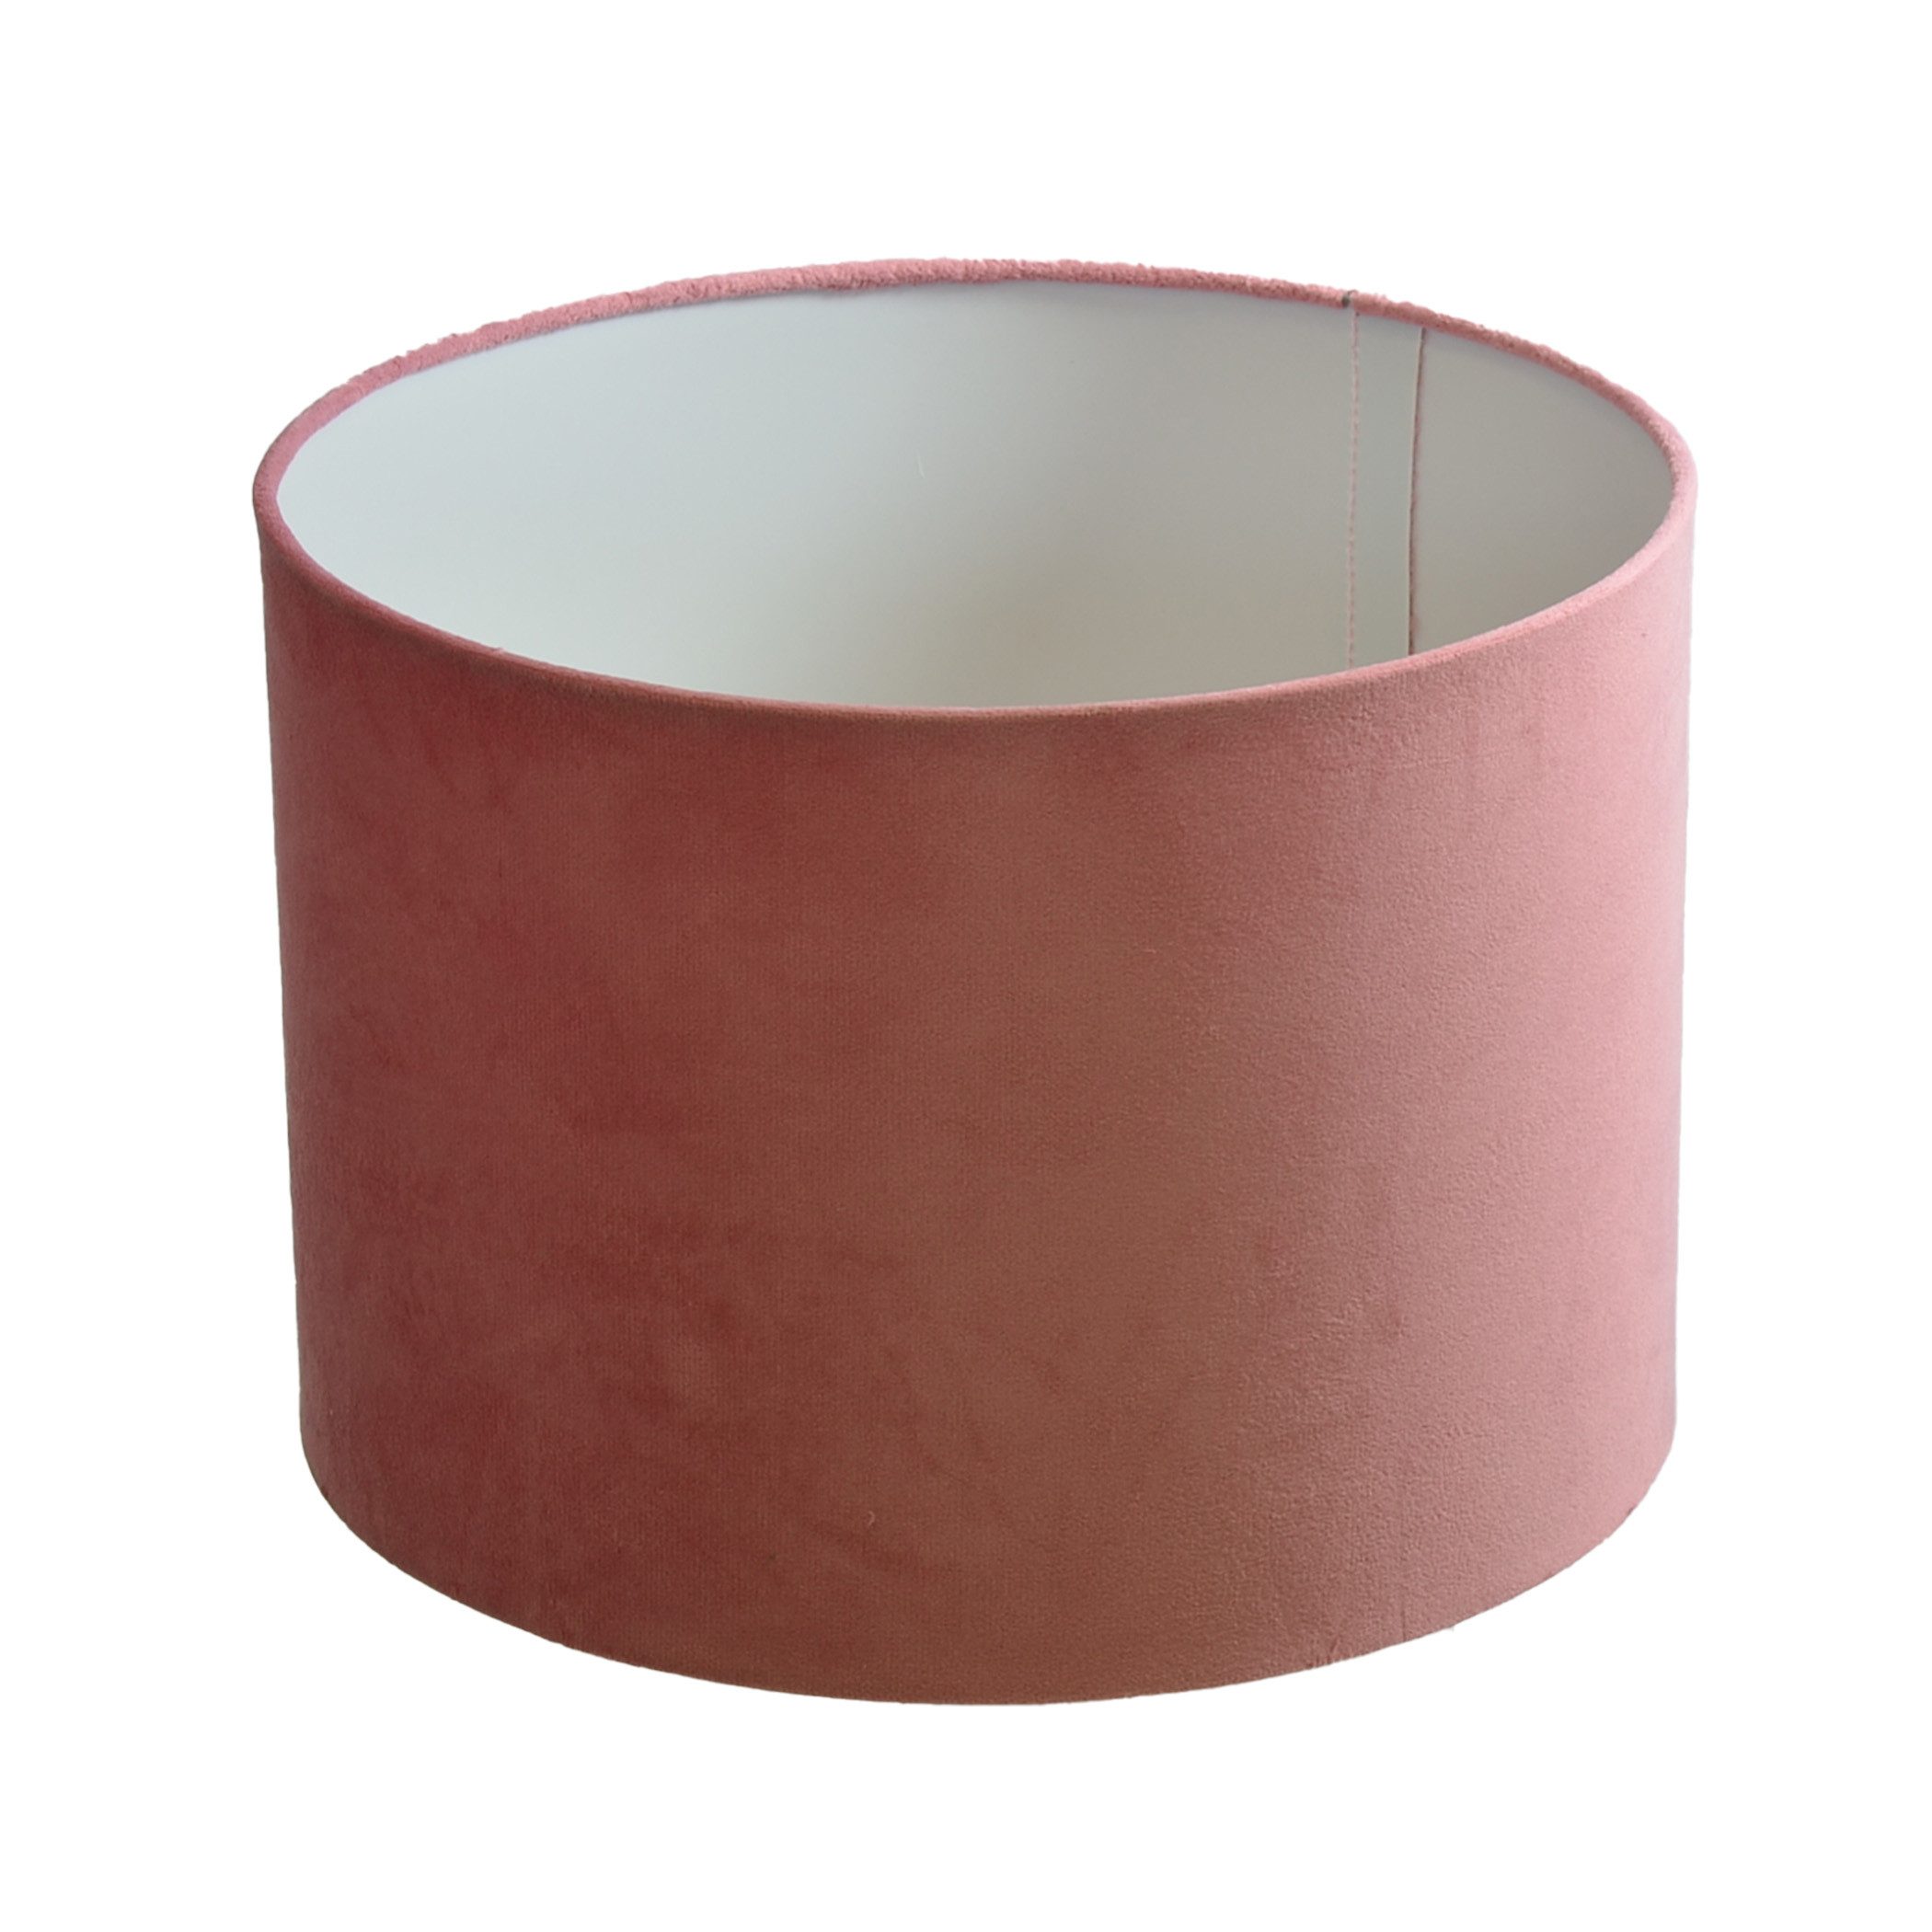 B&S Lampenschirm Ø 30 x 20 cm Velour rosa samtige Oberfläche Zylinderform